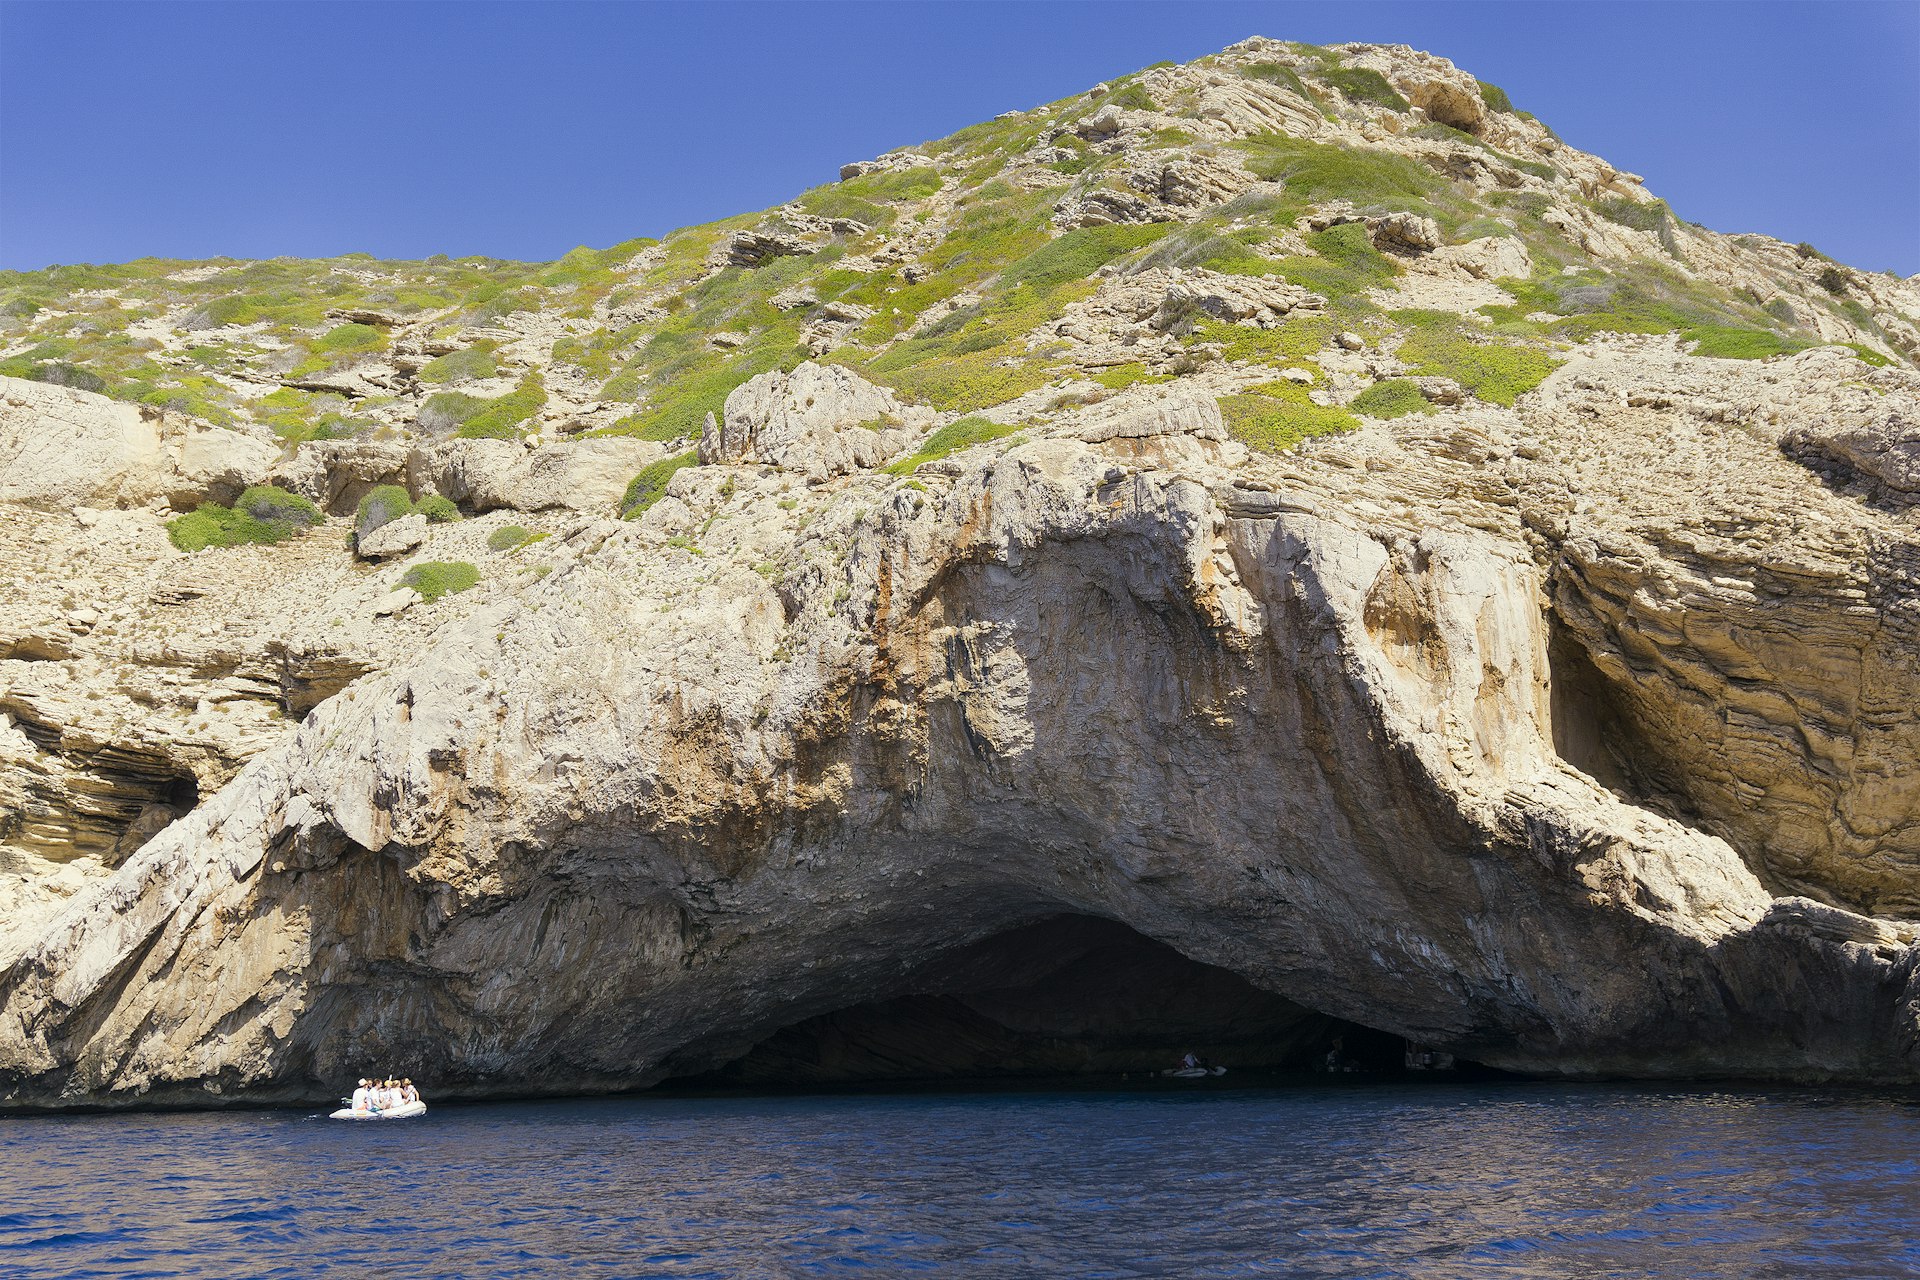 A small boat explores the picturesque coast of Cabrera Island